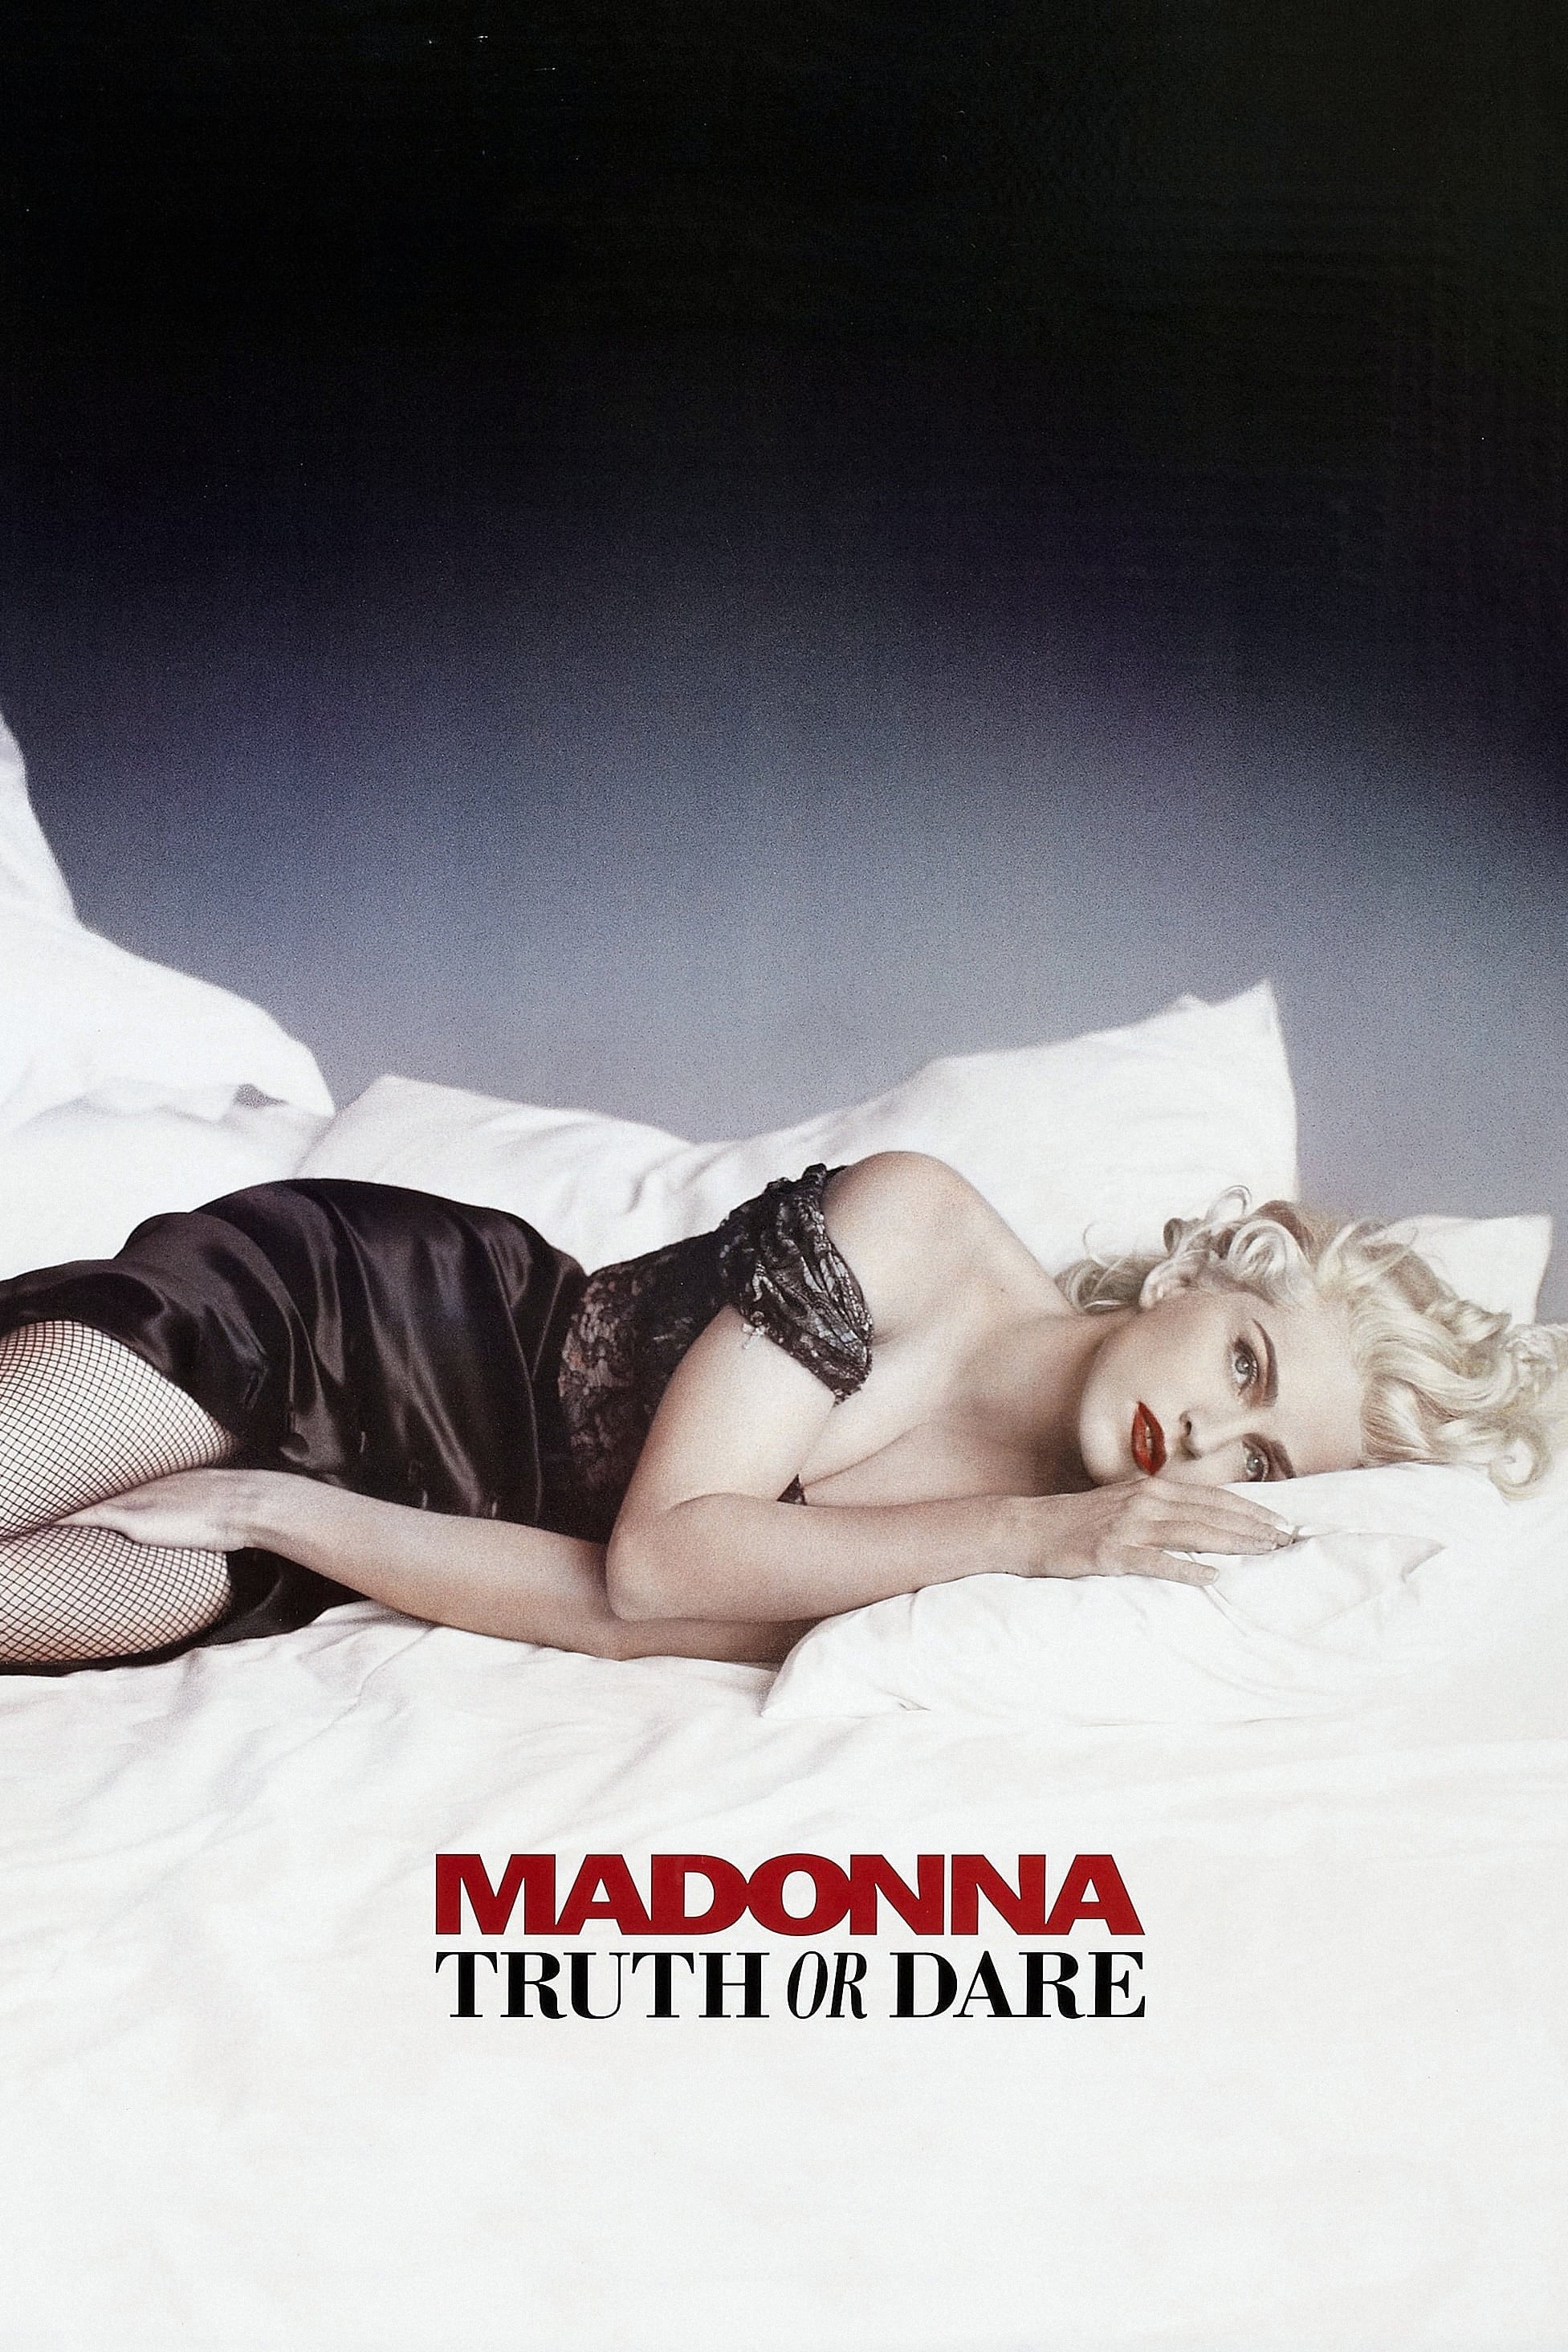 En la cama con Madonna